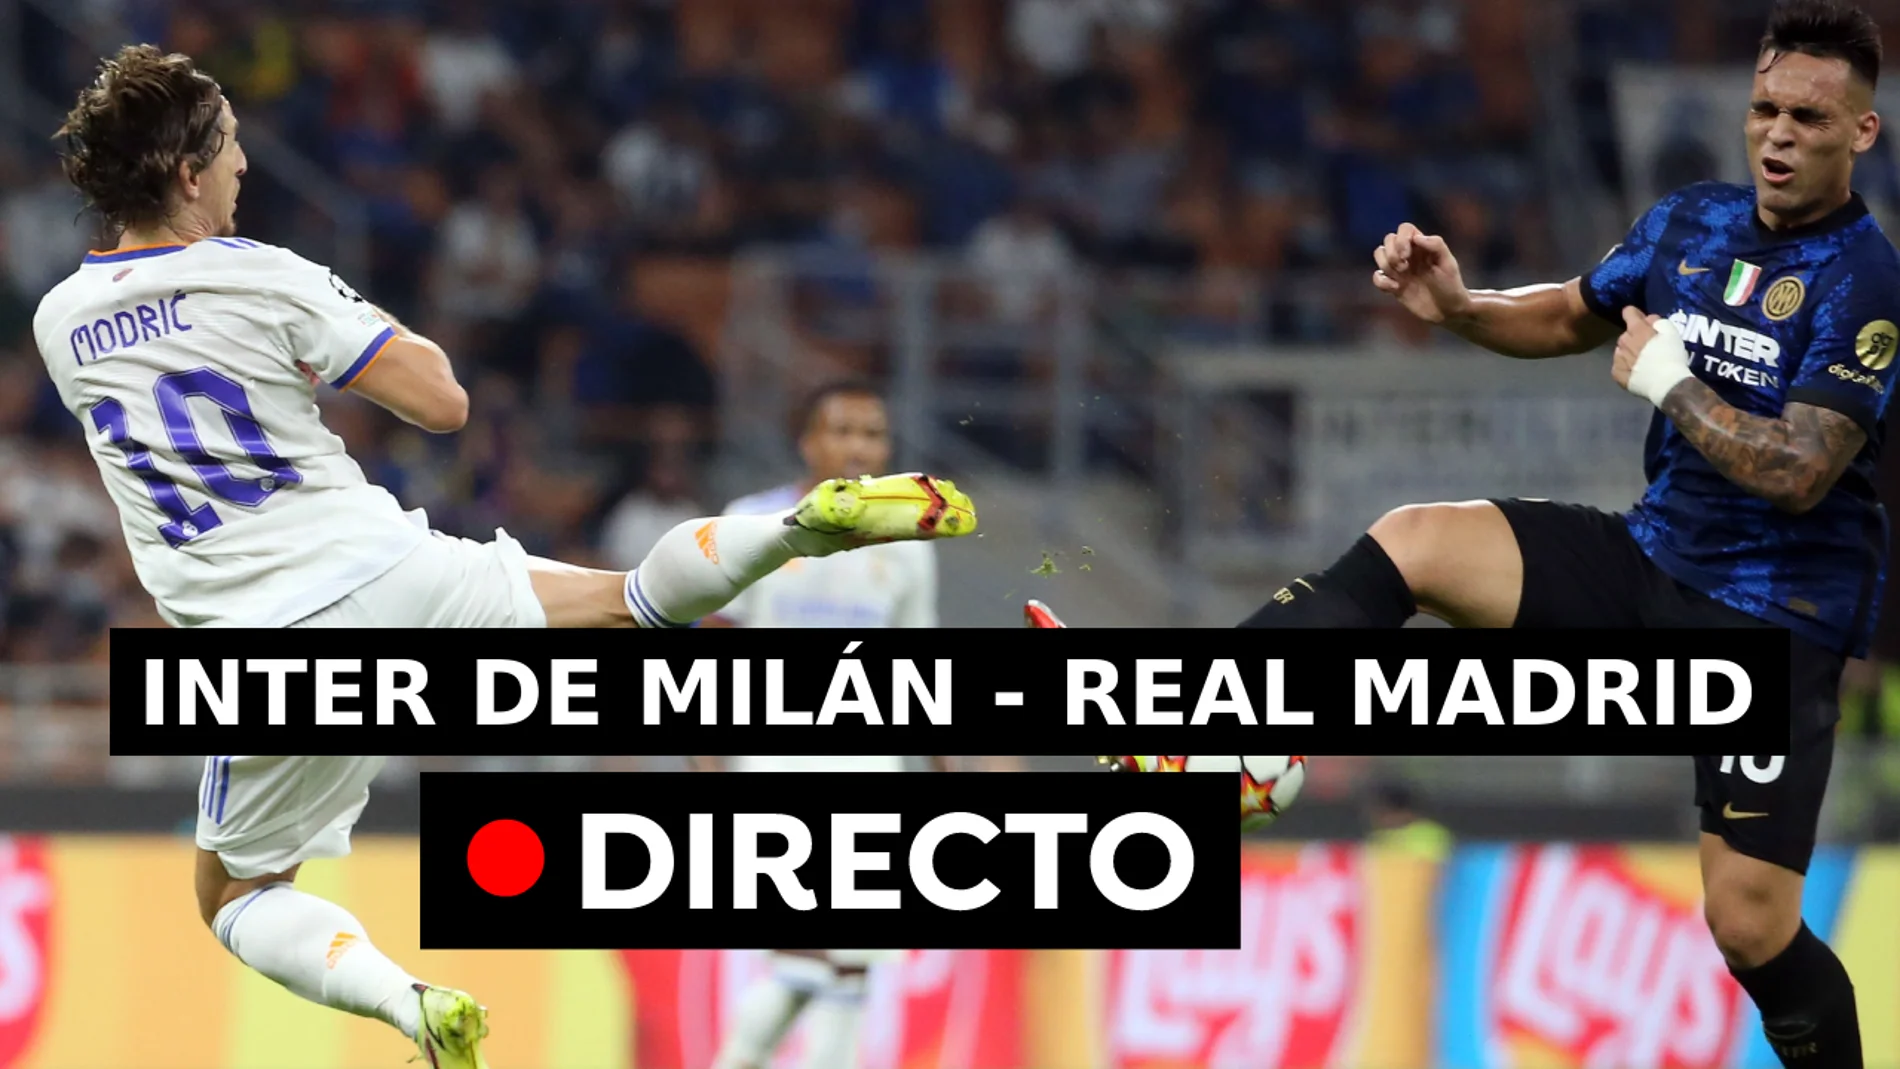 Real Madrid - Inter de Milán: Resultado del partido de hoy de la Champions League, en directo (0-0)